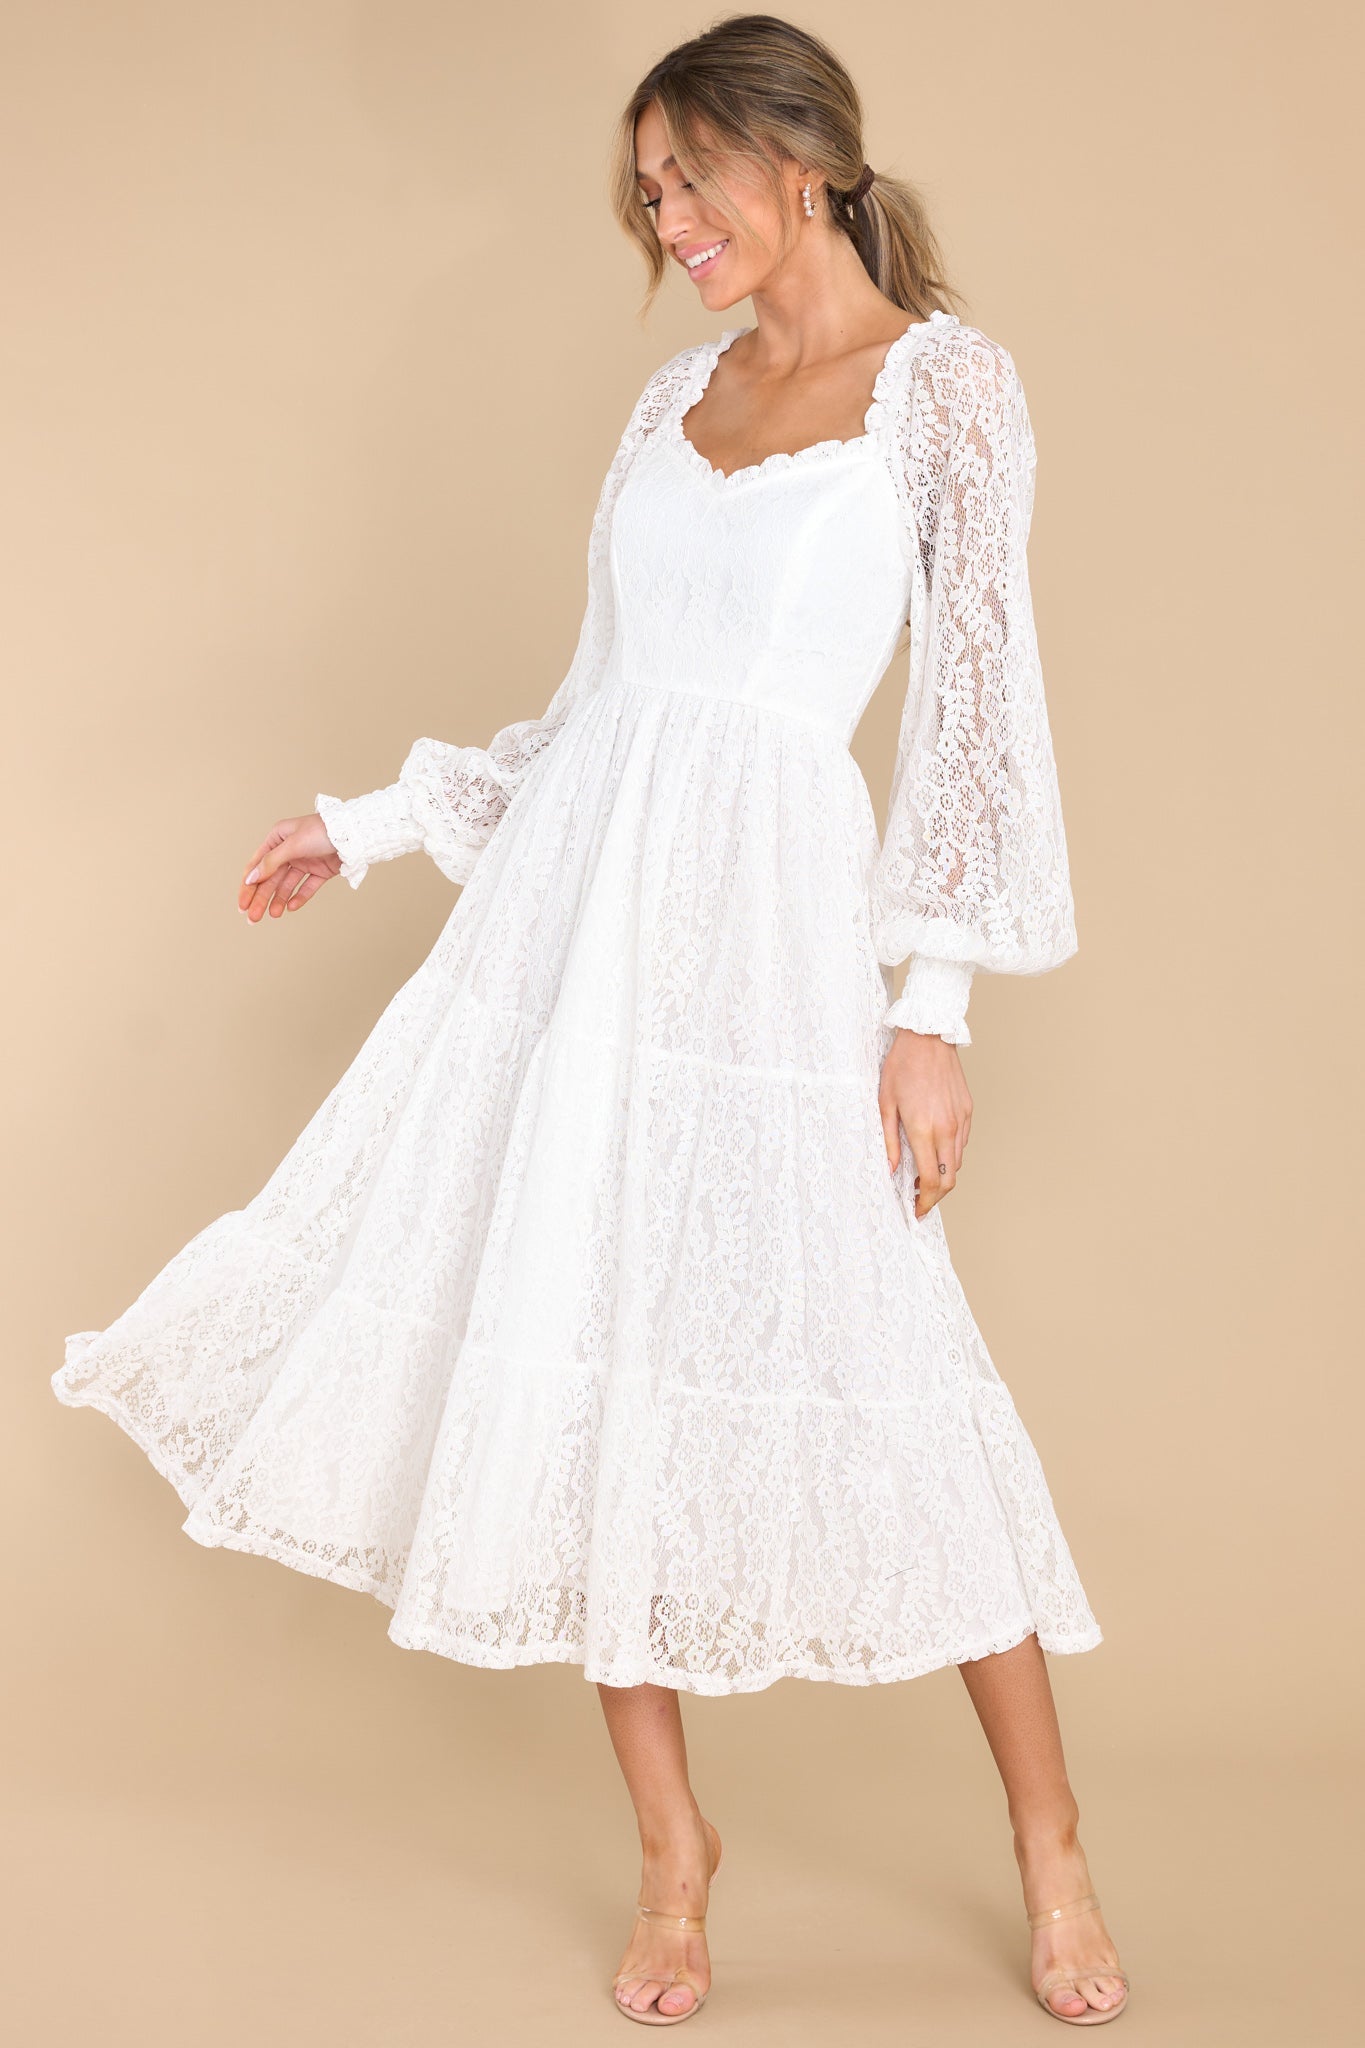 One Wish White Lace Midi Dress